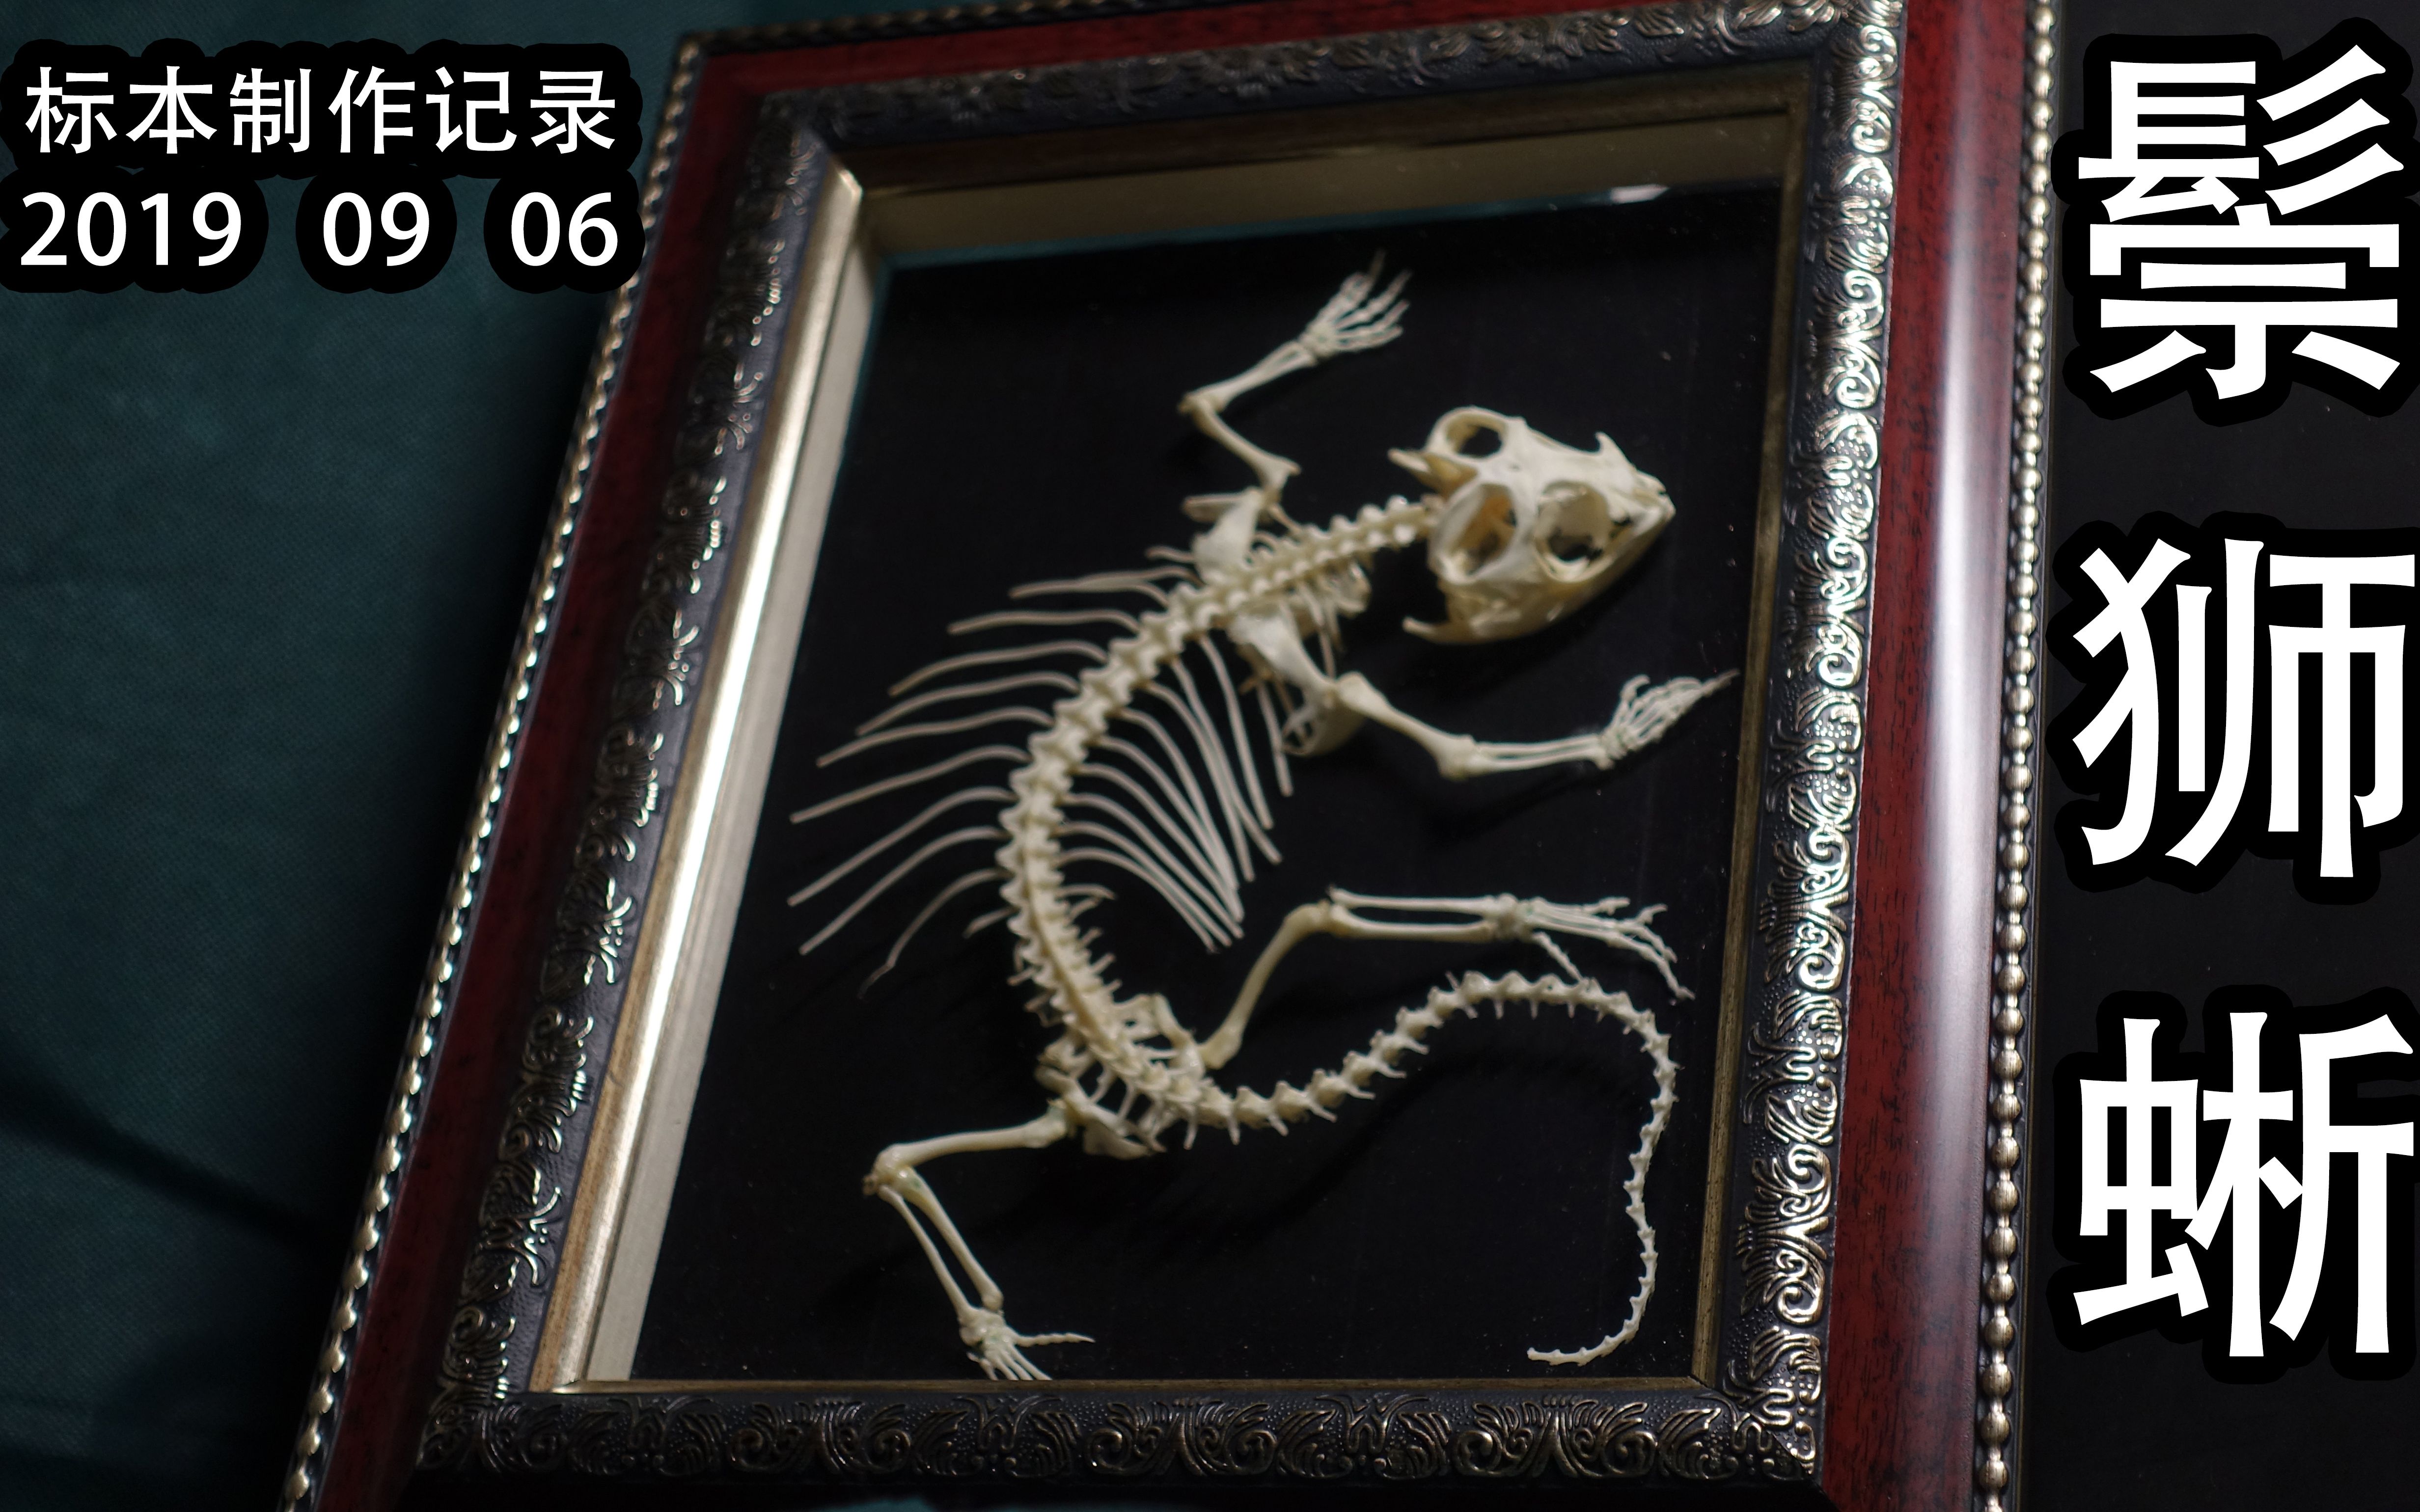 鬃狮蜥蜴骨骼标本图片